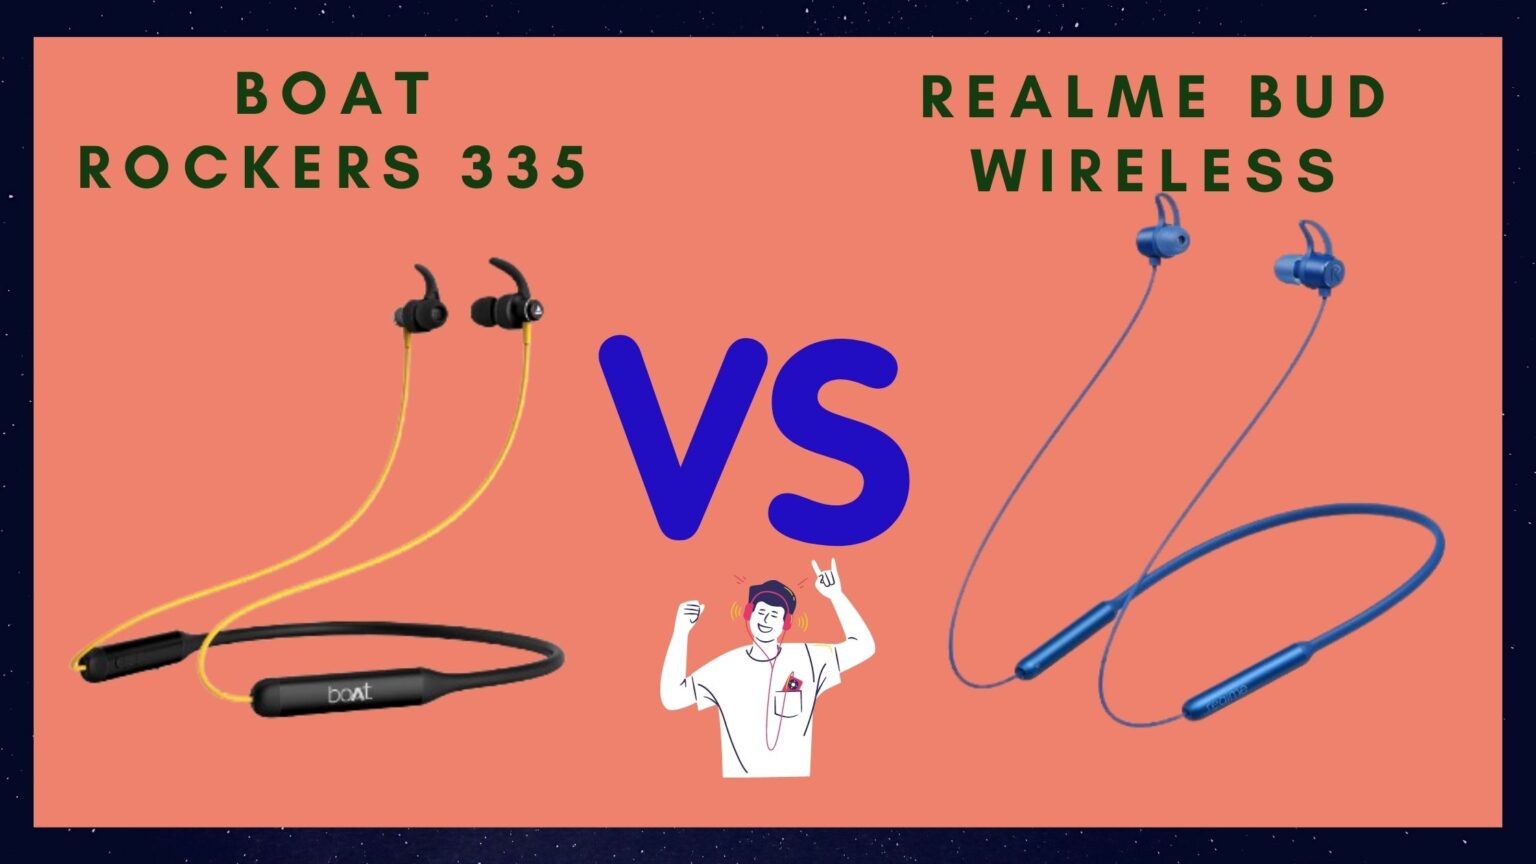 Boat Rockerz 335 vs Realme Bud Wireless Review & Comparison